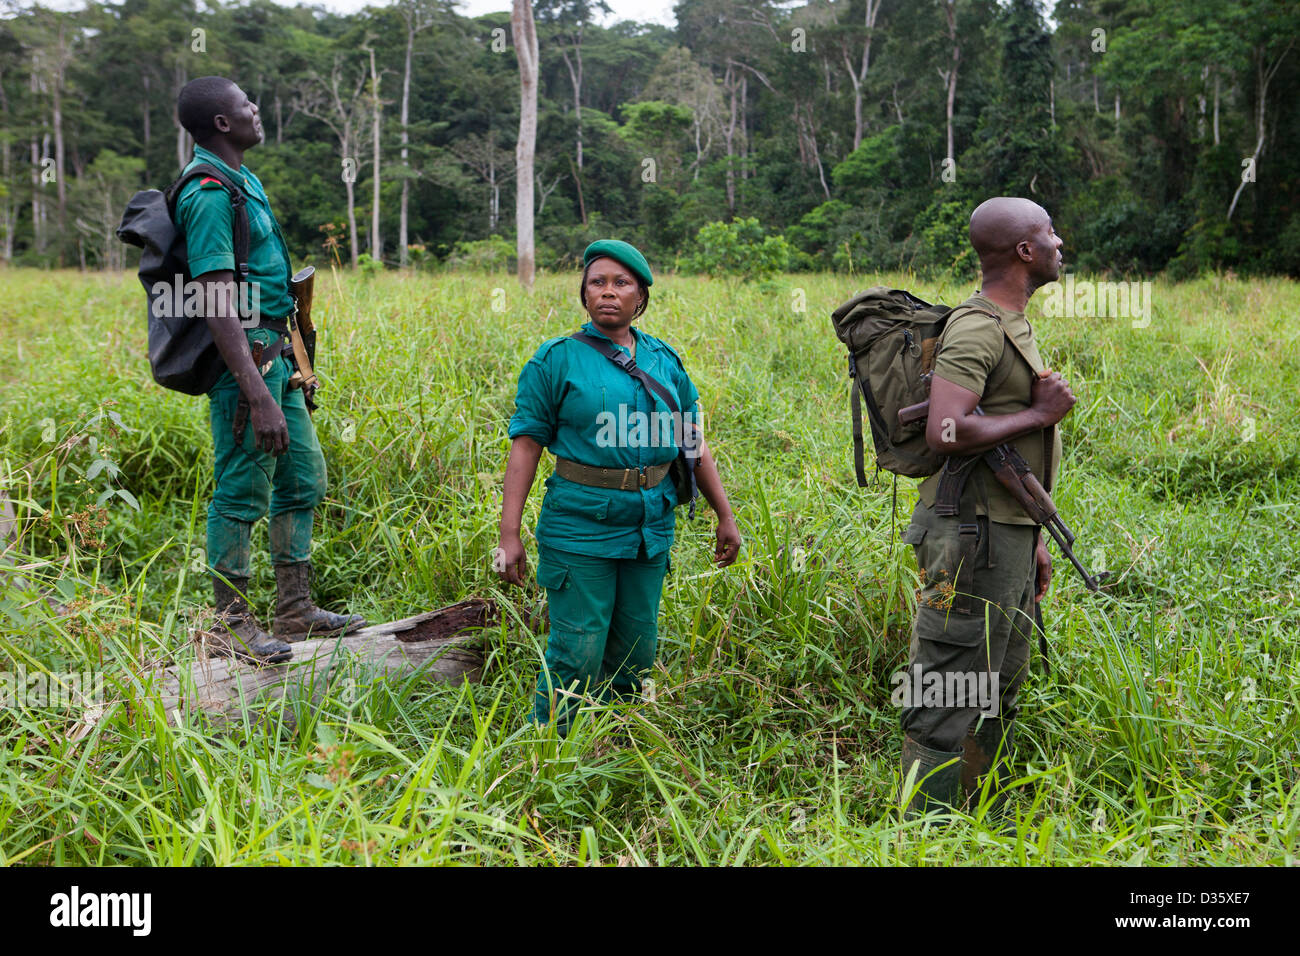 Kongo, 29. September 2012: Sidone Aseme, eine weibliche kamerunischen Dozententraining ist in einer Bi-nationalen Gruppe von Ecoguards aus Kamerun und Gabun Patrouille auf der Suche nach Beweisen für Wildtiere Wilderei. Stockfoto